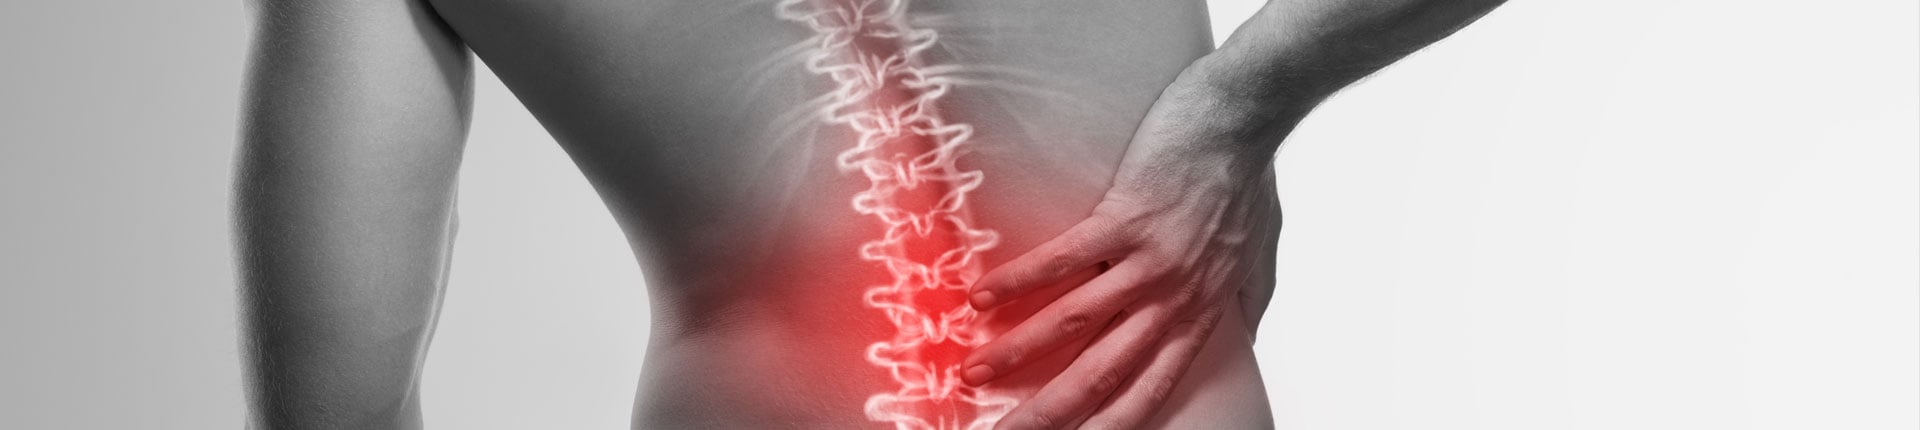 Ból w dole pleców, przyczyny i leczenie bólu w odcinku lędzwiowym